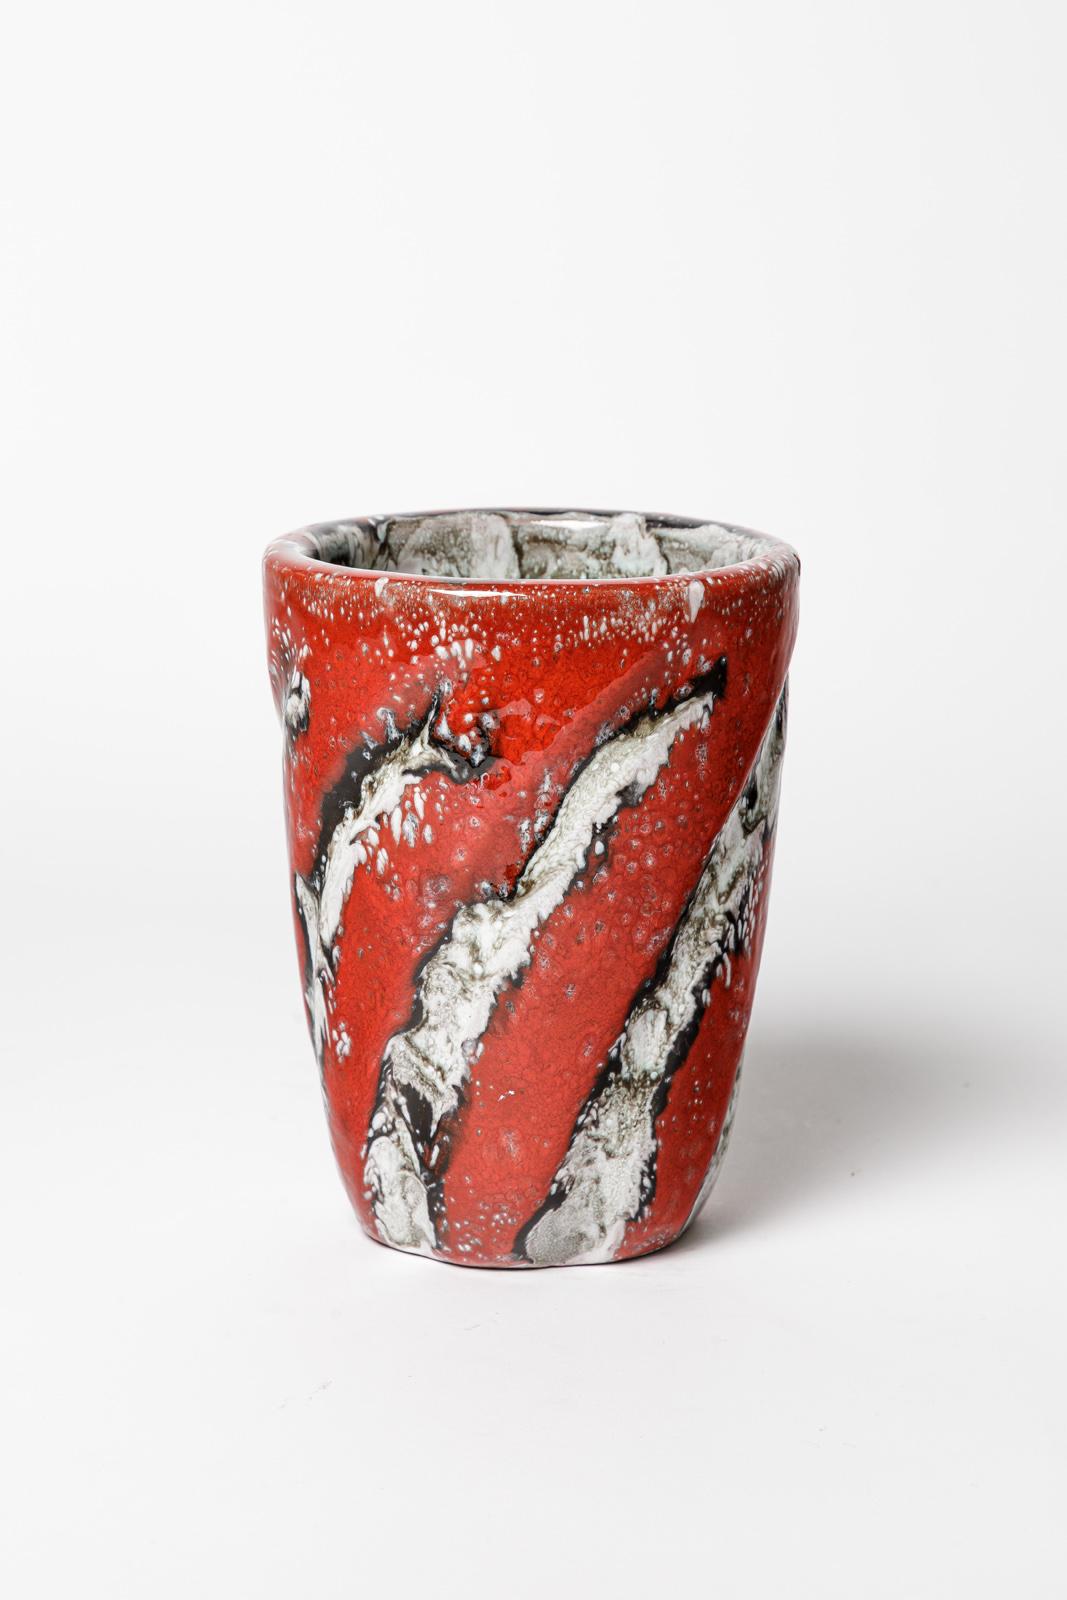 Arlette Roux

Weiße und rote Keramikvase im Design des 20. Jahrhunderts

Original perfekter Zustand

Unterzeichnet

Höhe 16 cm
Groß 12 cm